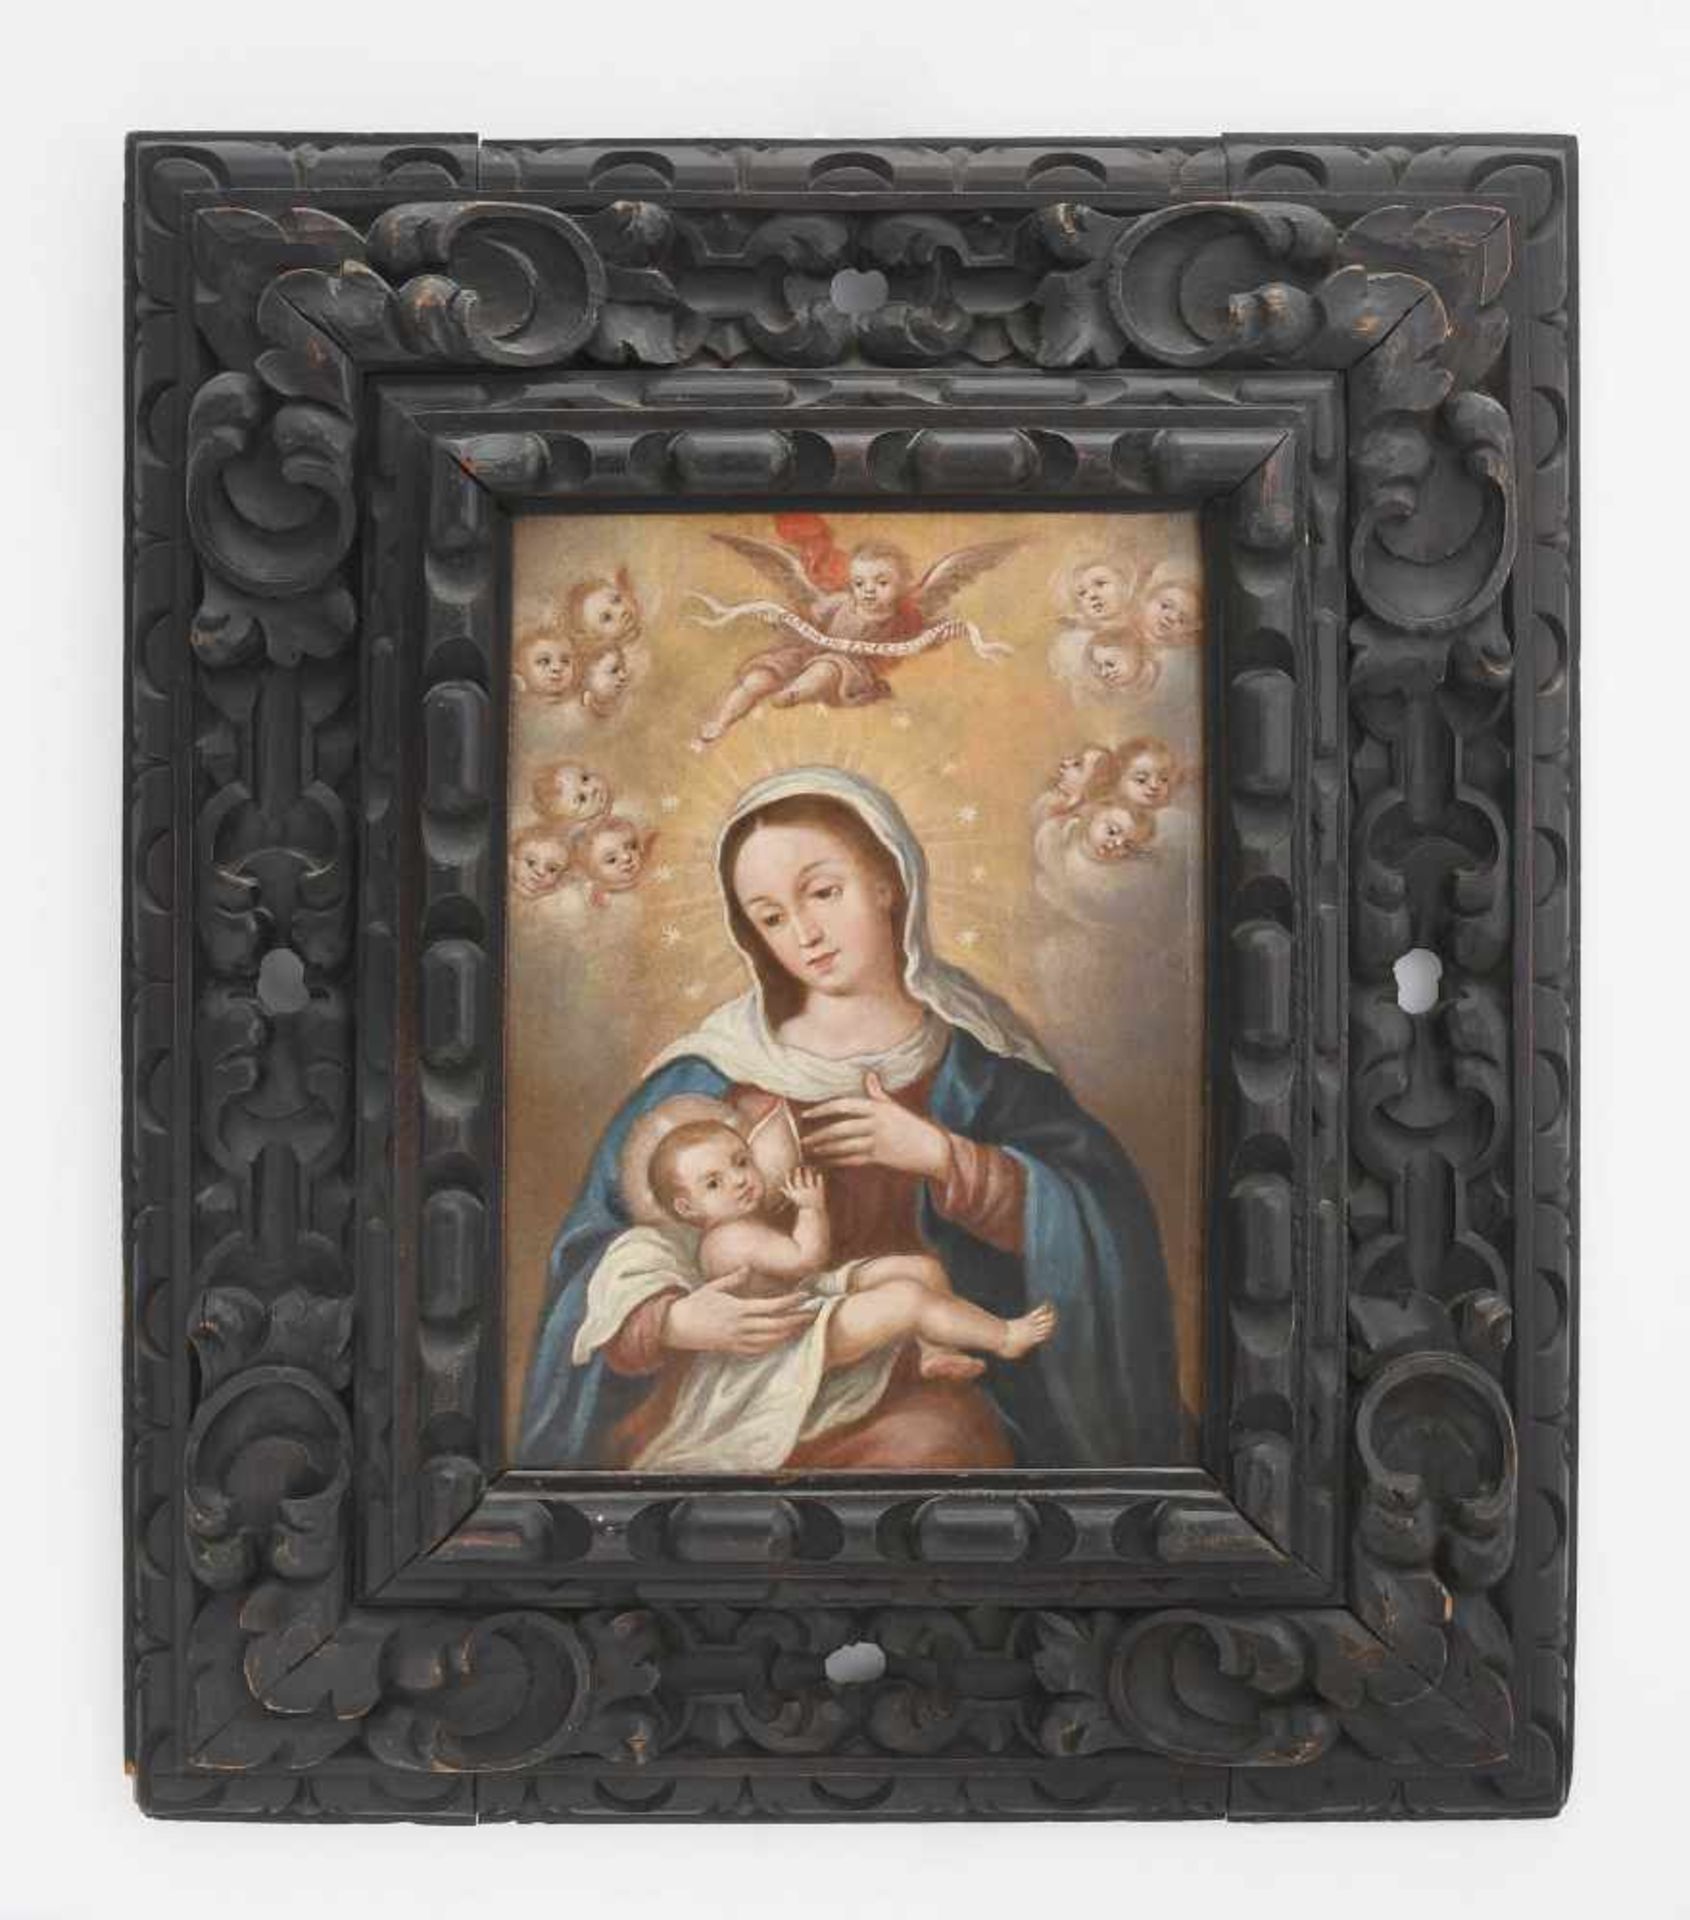 AndachtsbildAnonym, um 1800. Öl auf Holz. Maria lactans vor gewolktem Hintergrund mit Putti. 26 × 19